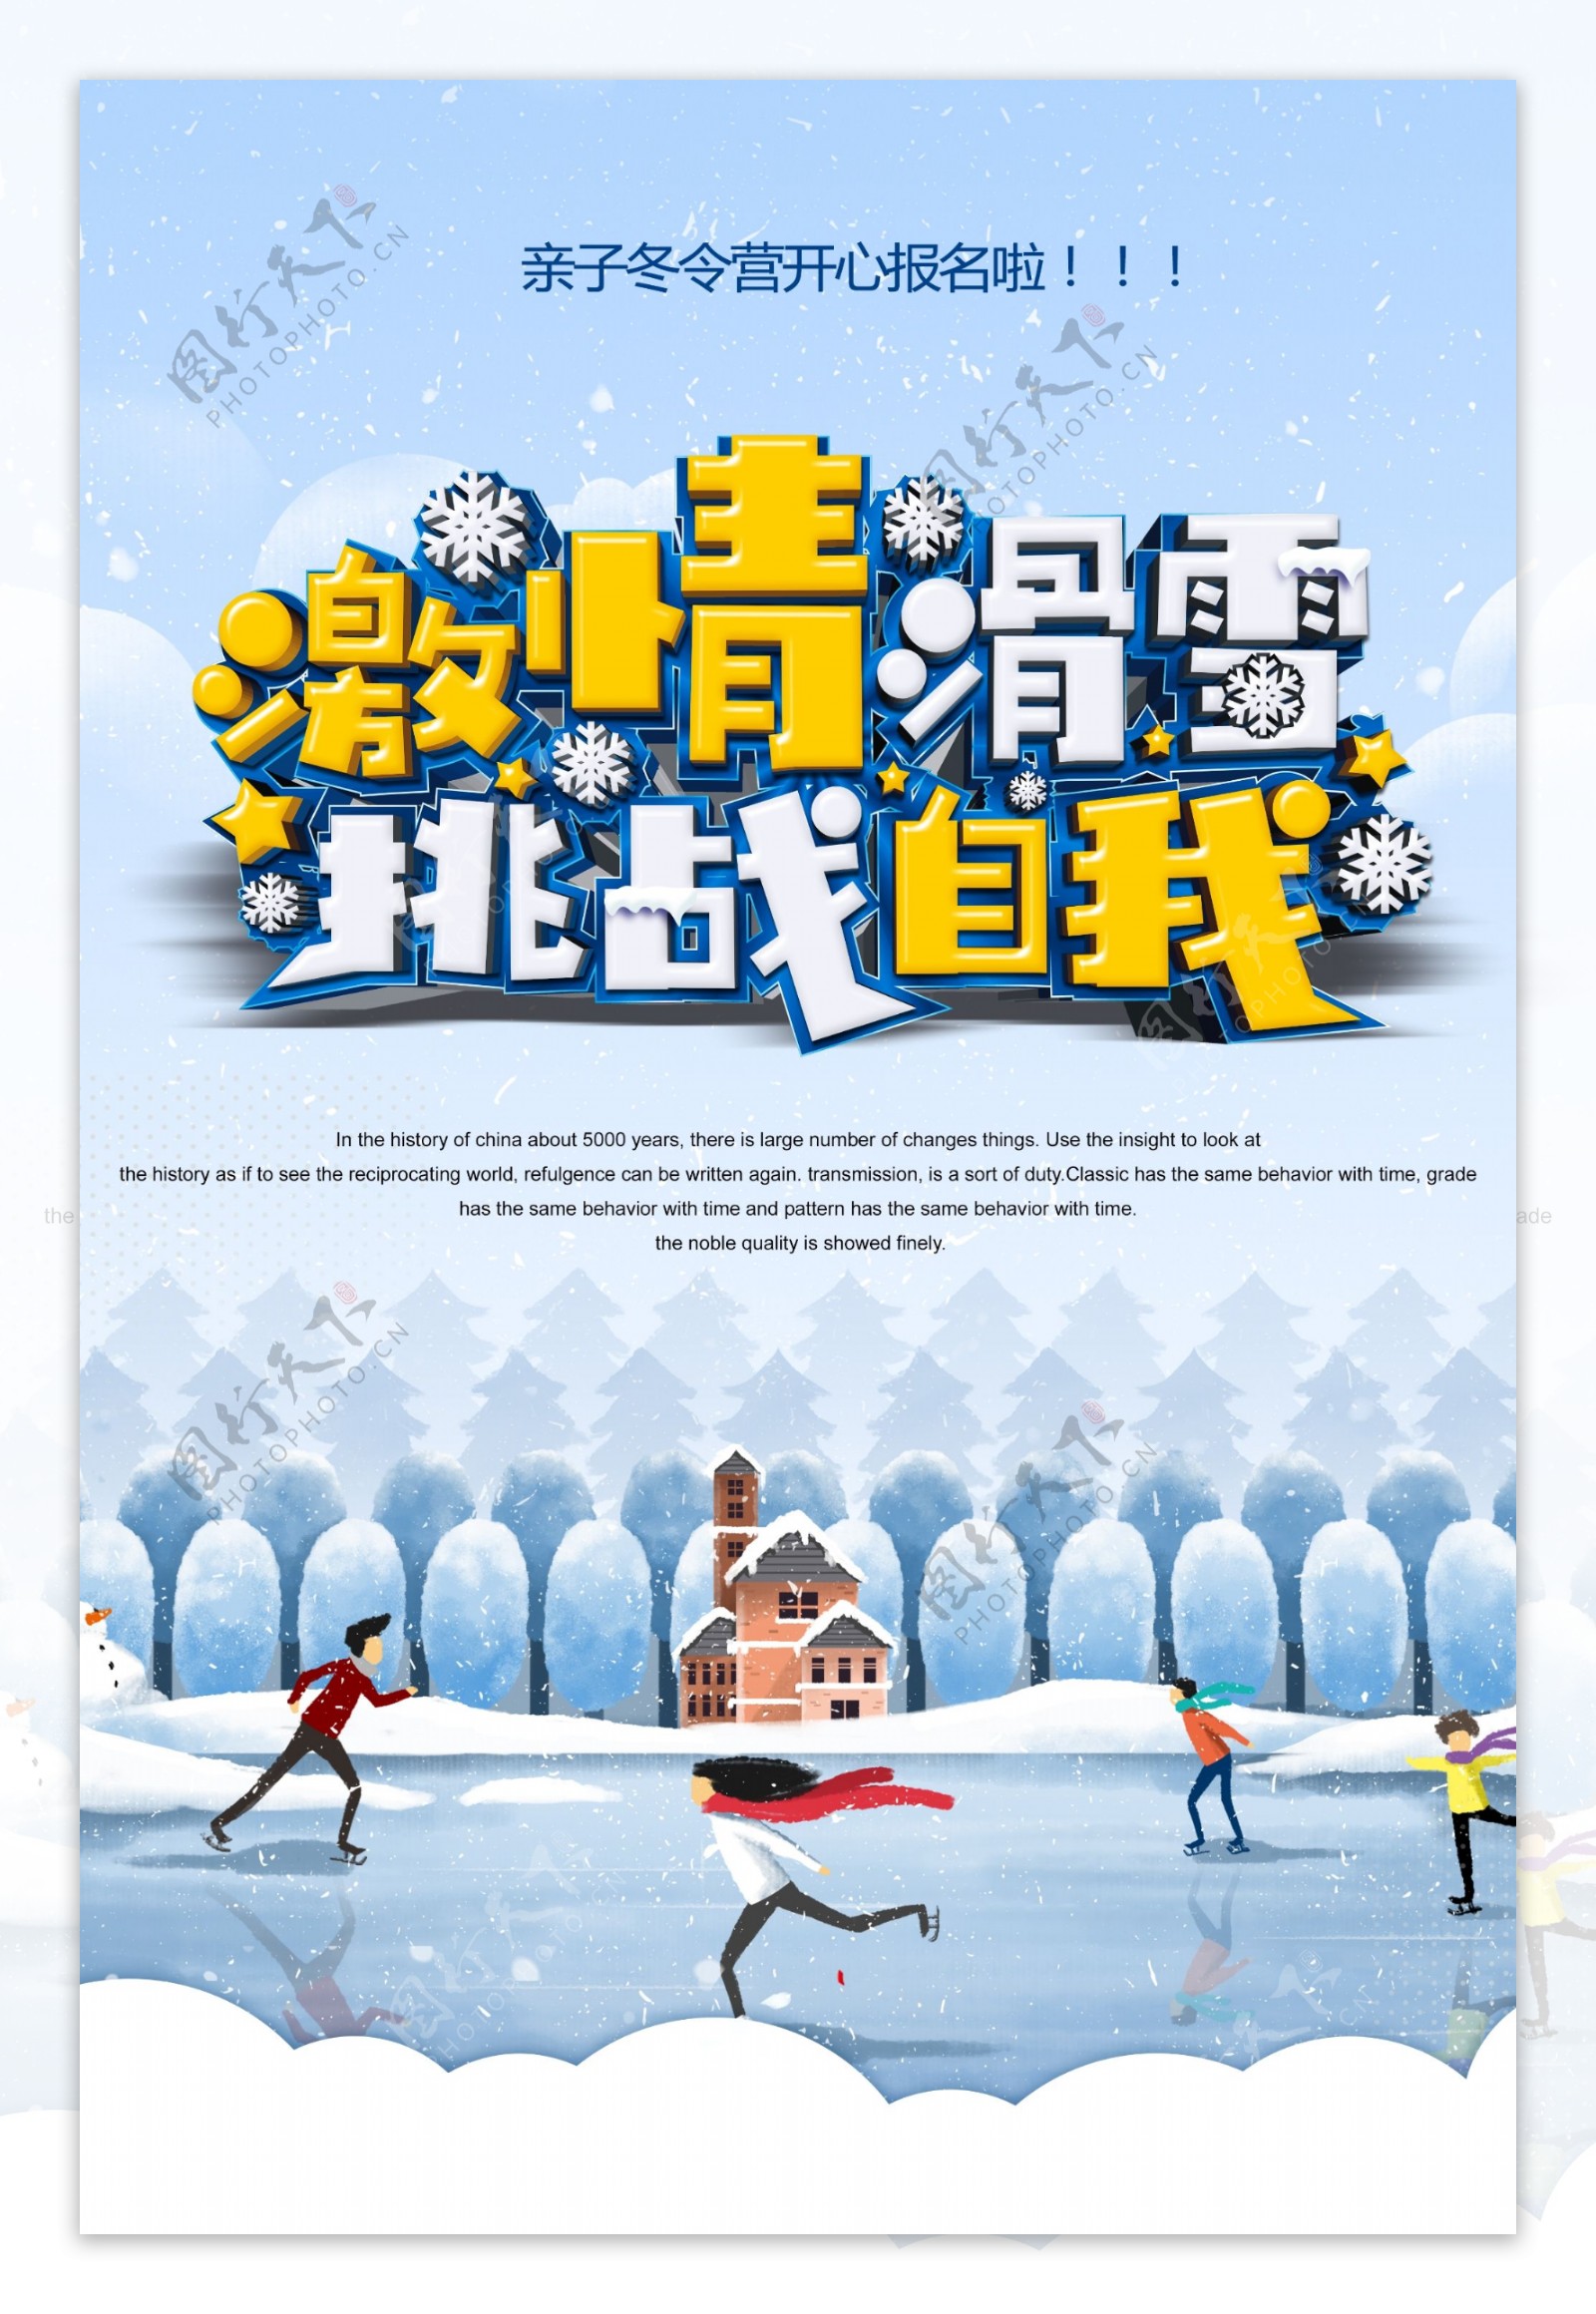 激情滑雪挑战自我海报设计